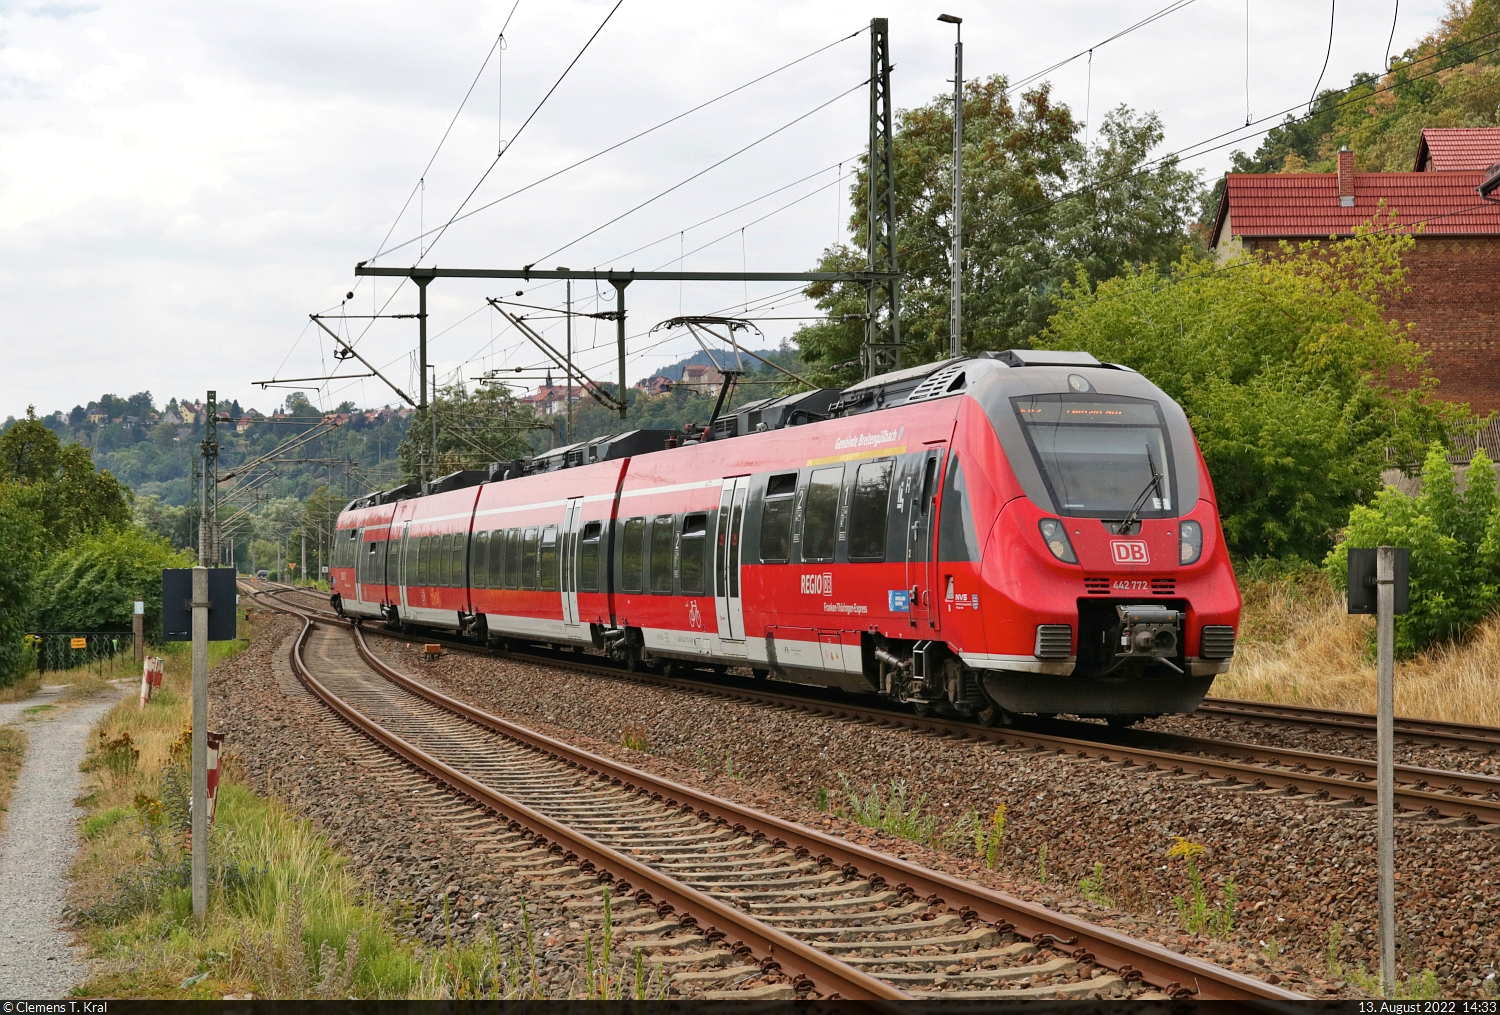 442 772  Gemeinde Breitengüßbach  (Bombardier Talent 2) durchfährt den Bahnhof Orlamünde.
Das Bild entstand von einem Weg parallel zu den Gleisen, der zu einem Bahnübergang führt (siehe Karte und Bild davor).

🧰 Franken-Thüringen-Express (FTX | DB Regio Bayern)
🚝 RE 4988 (RE42) Nürnberg Hbf–Leipzig Hbf
🕓 13.8.2022 | 14:33 Uhr